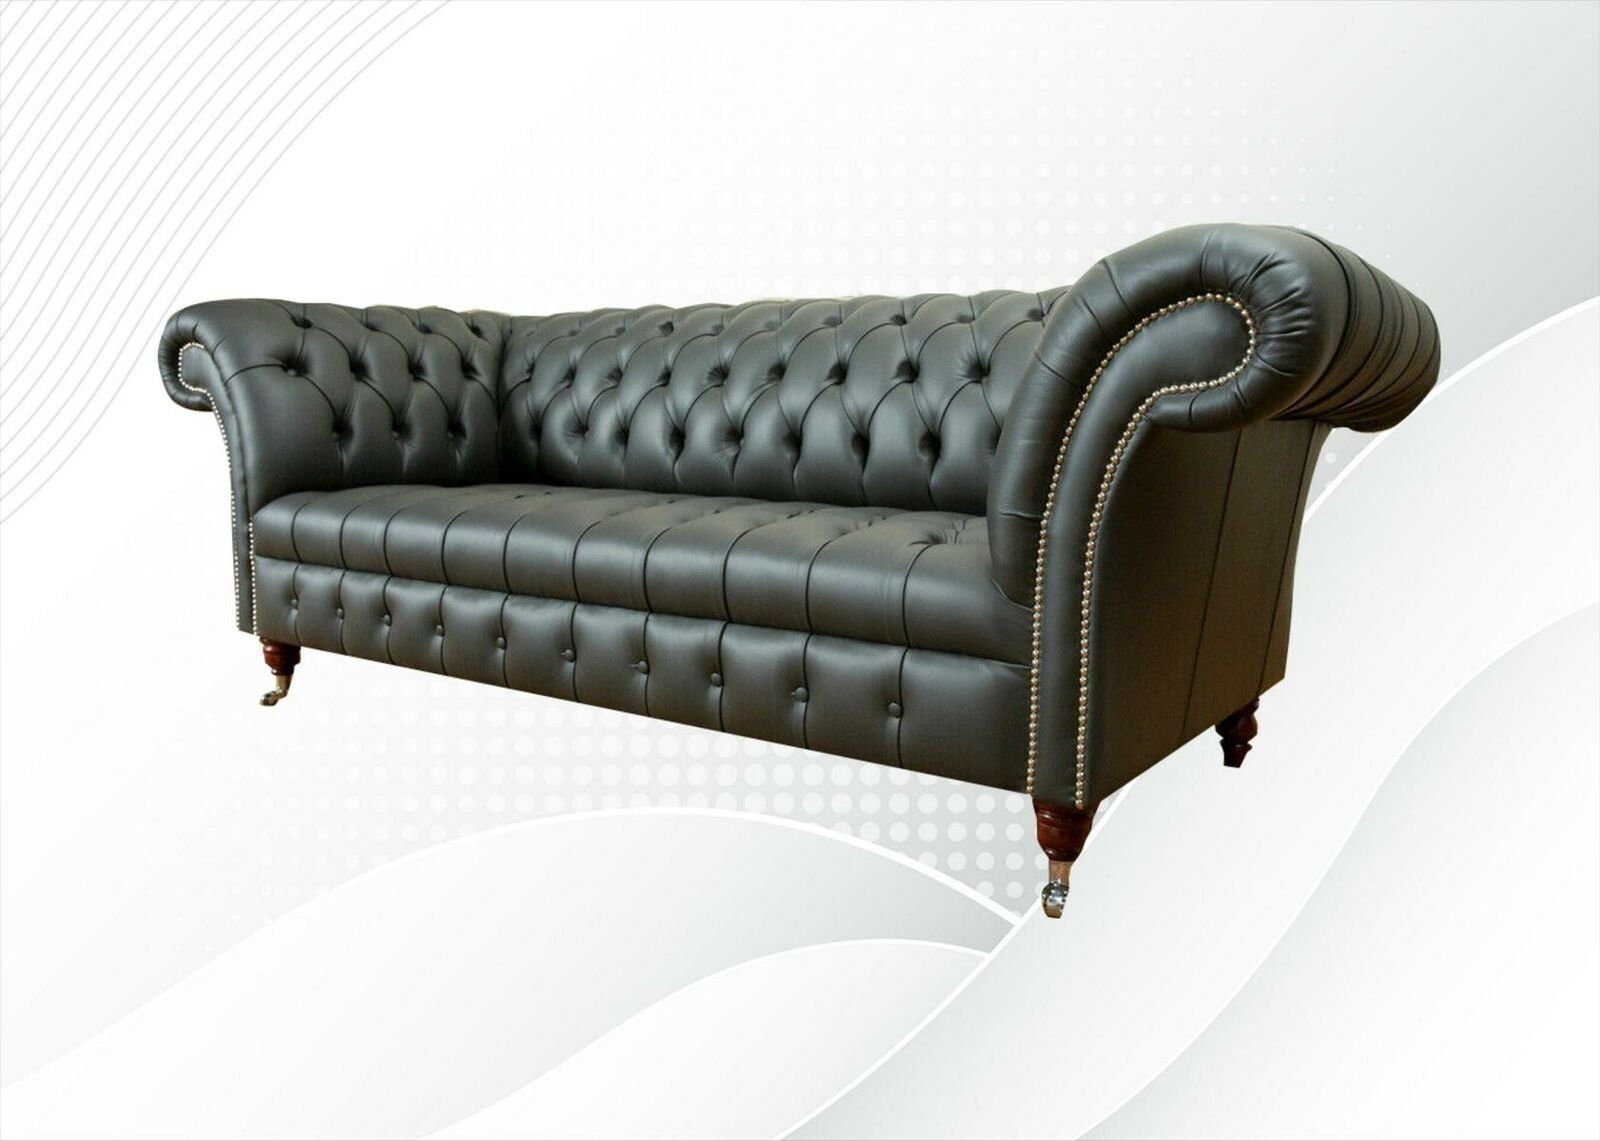 JVmoebel Chesterfield-Sofa, Chesterfield Leder Modern Sofa couchen Graue xxl big Sofas Design Möbel Couchen